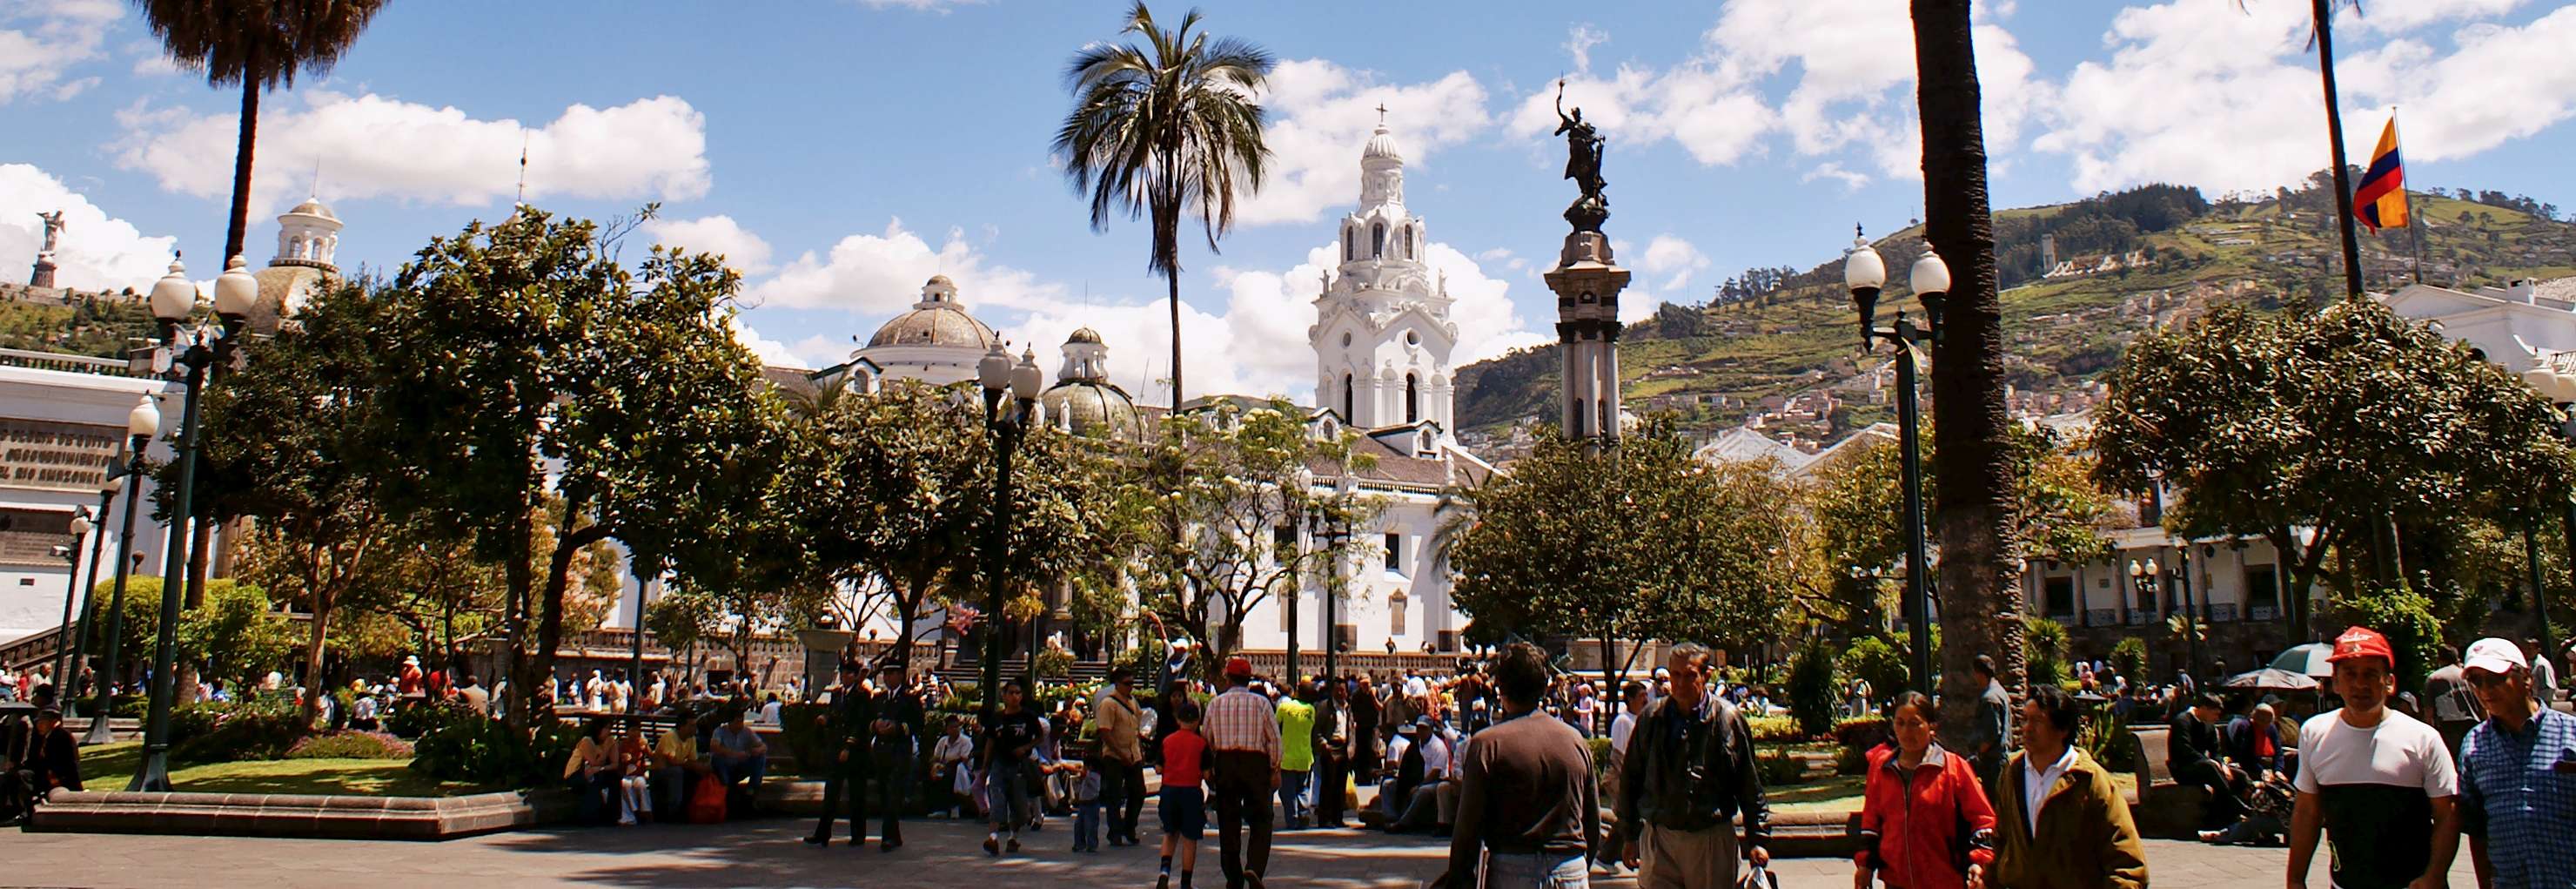 Quito  |  Plaza de Independencia